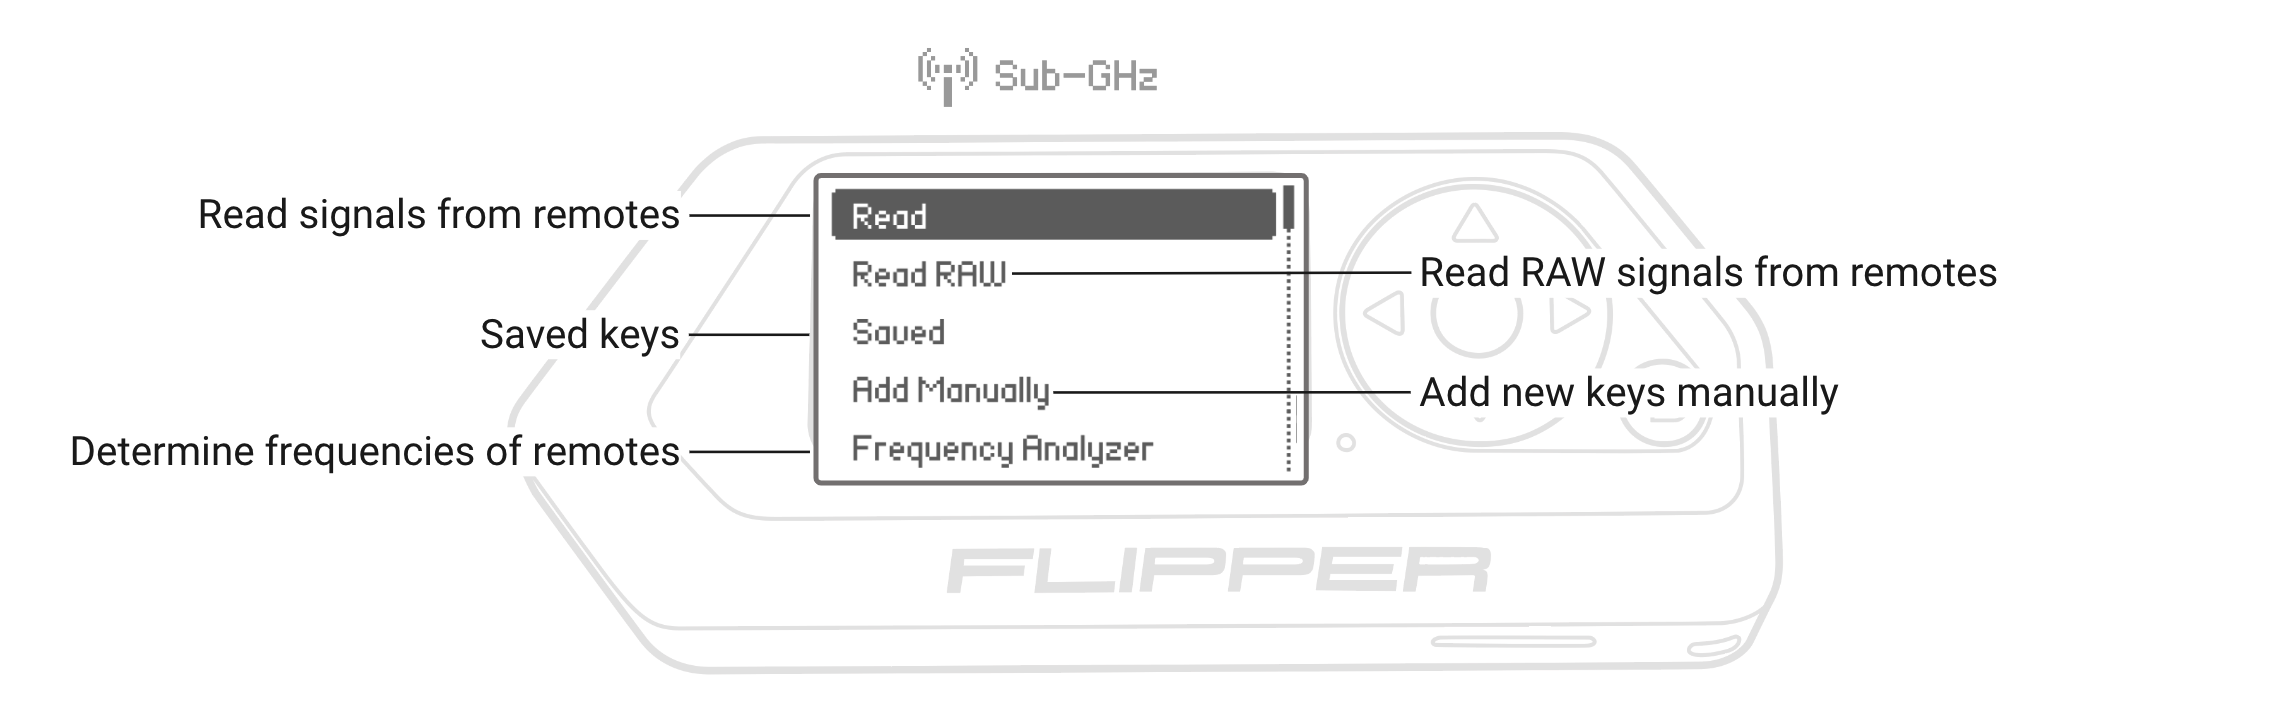 Sub-GHz application menu